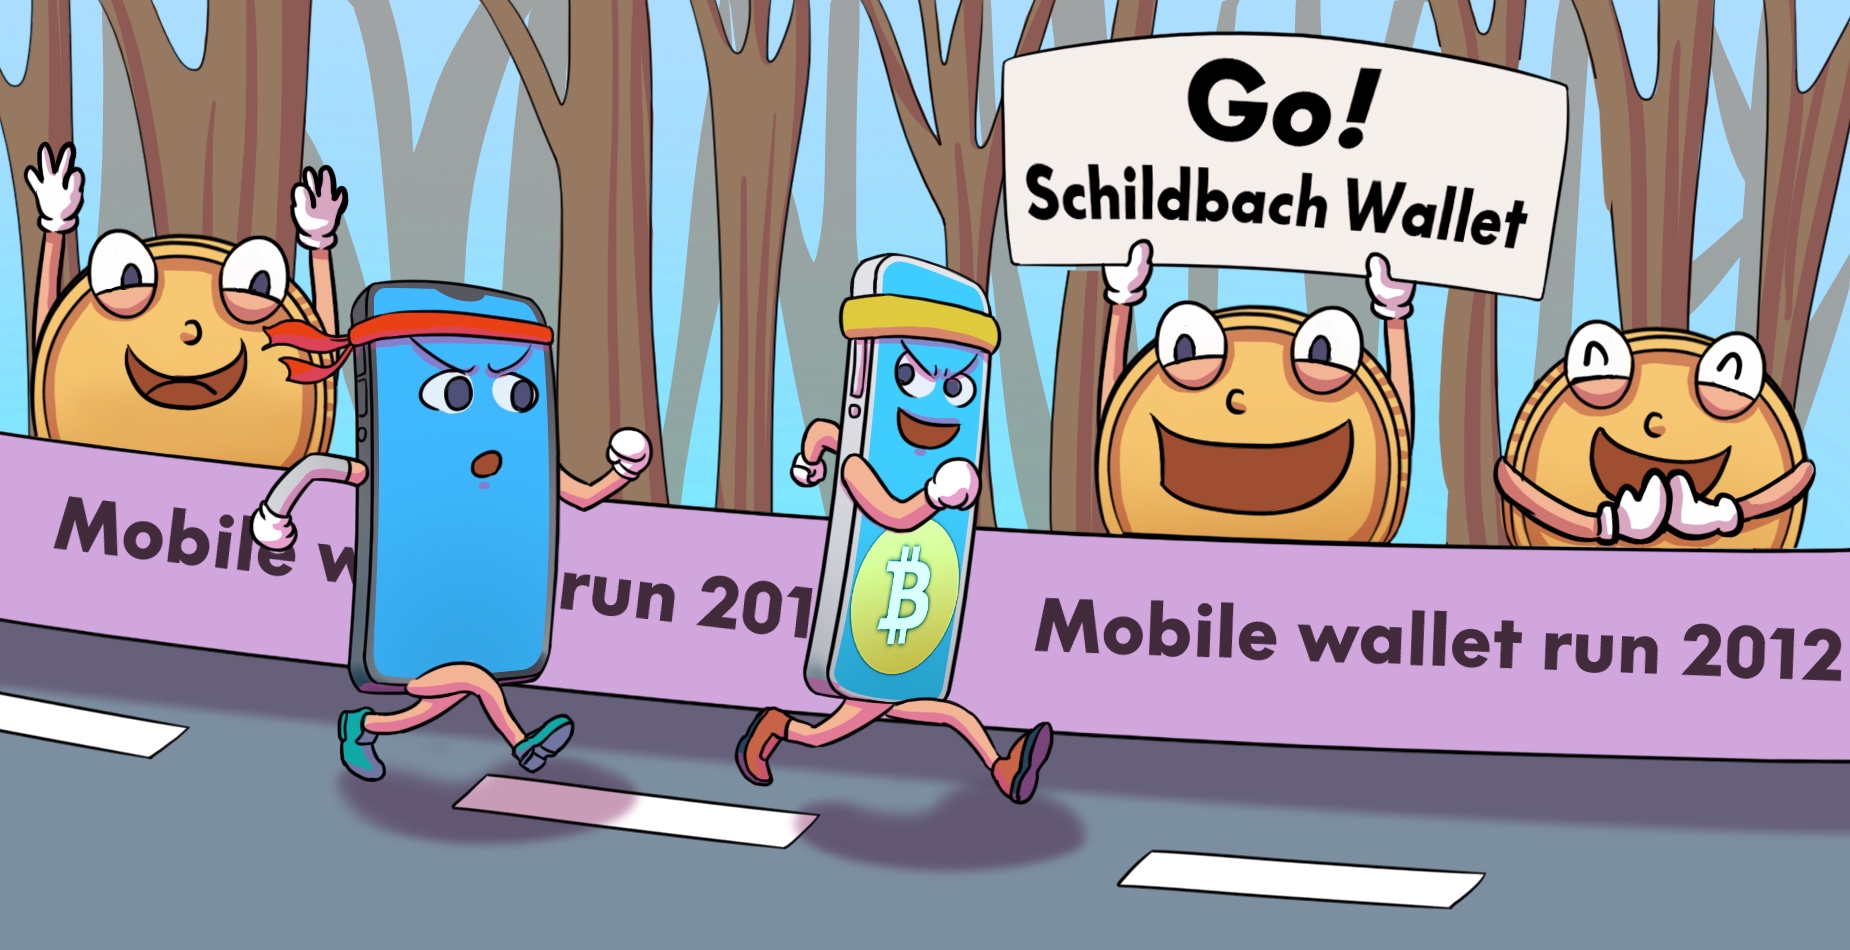 Deux smartphones participent à un marathon. Celui avec le logo de Schildbach est en première position et est encouragé par des cryptomonnaie.